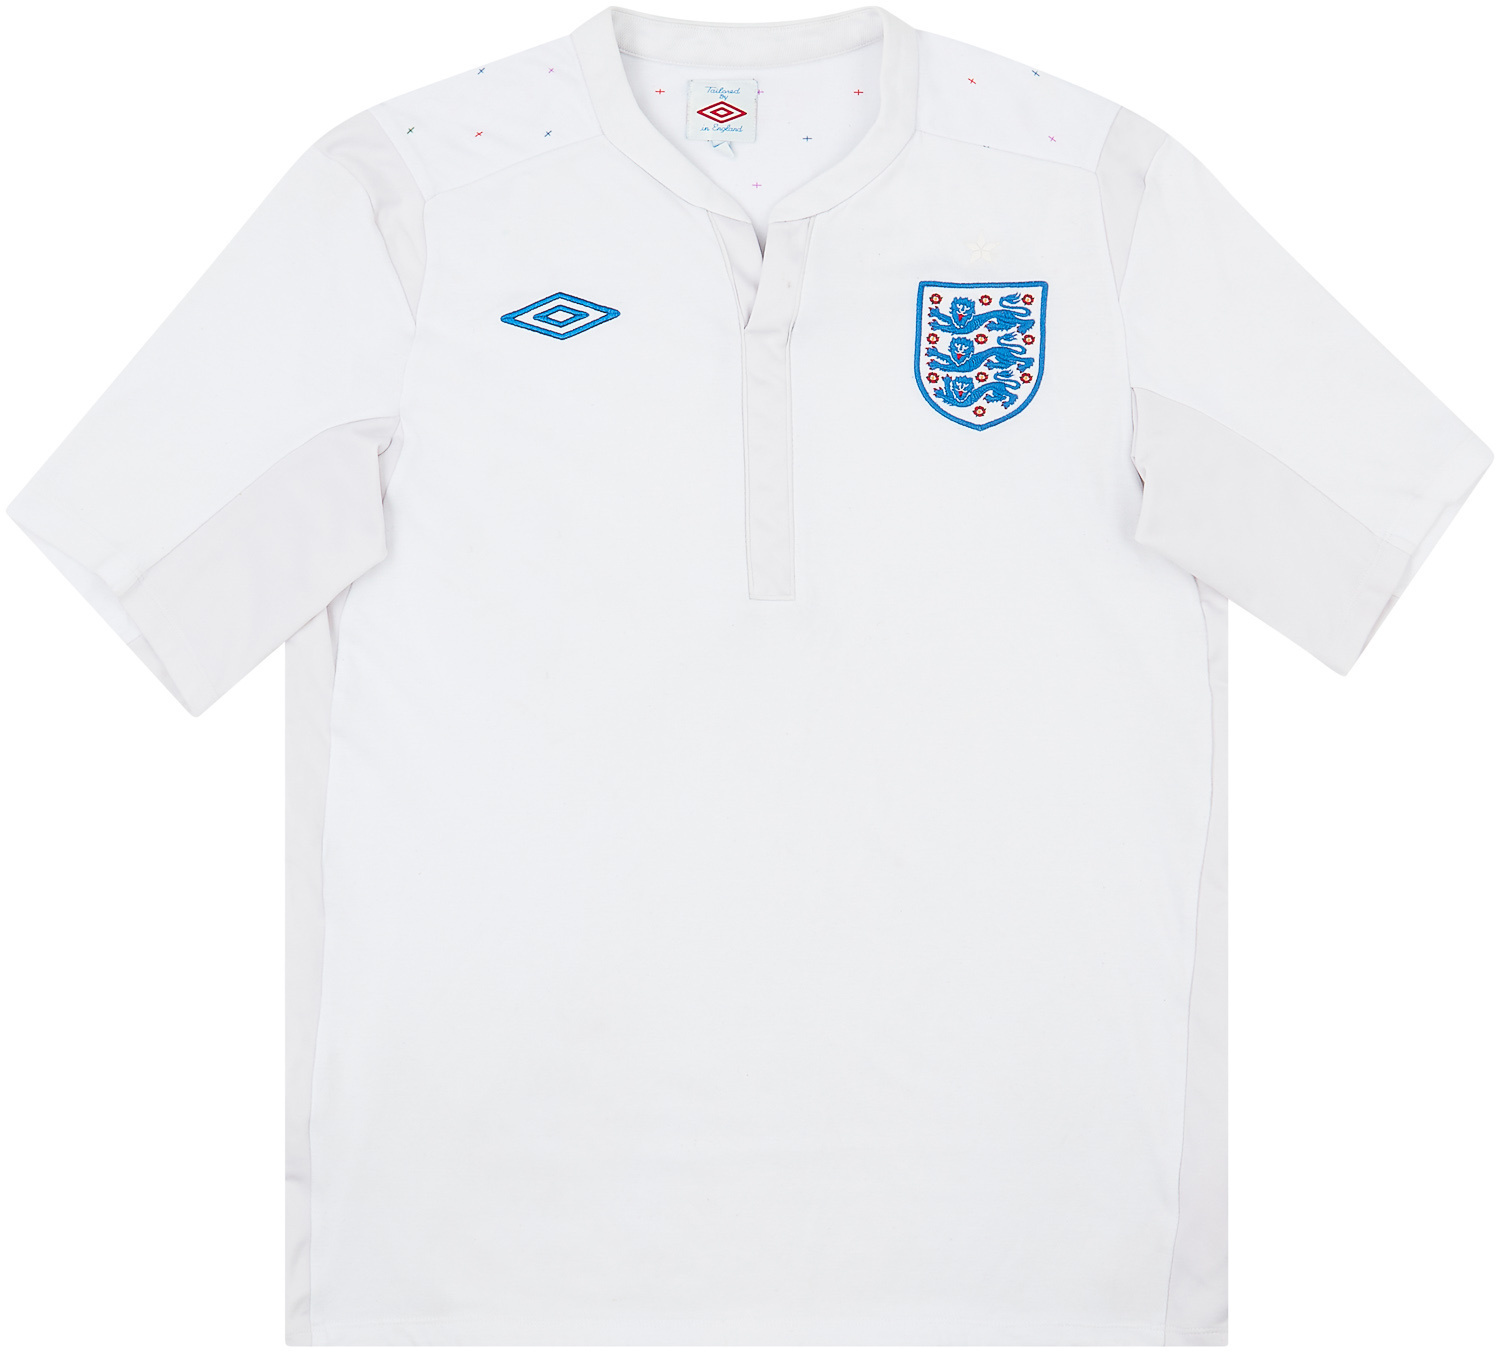 2010-11 England Home Shirt - 6/10 - ()